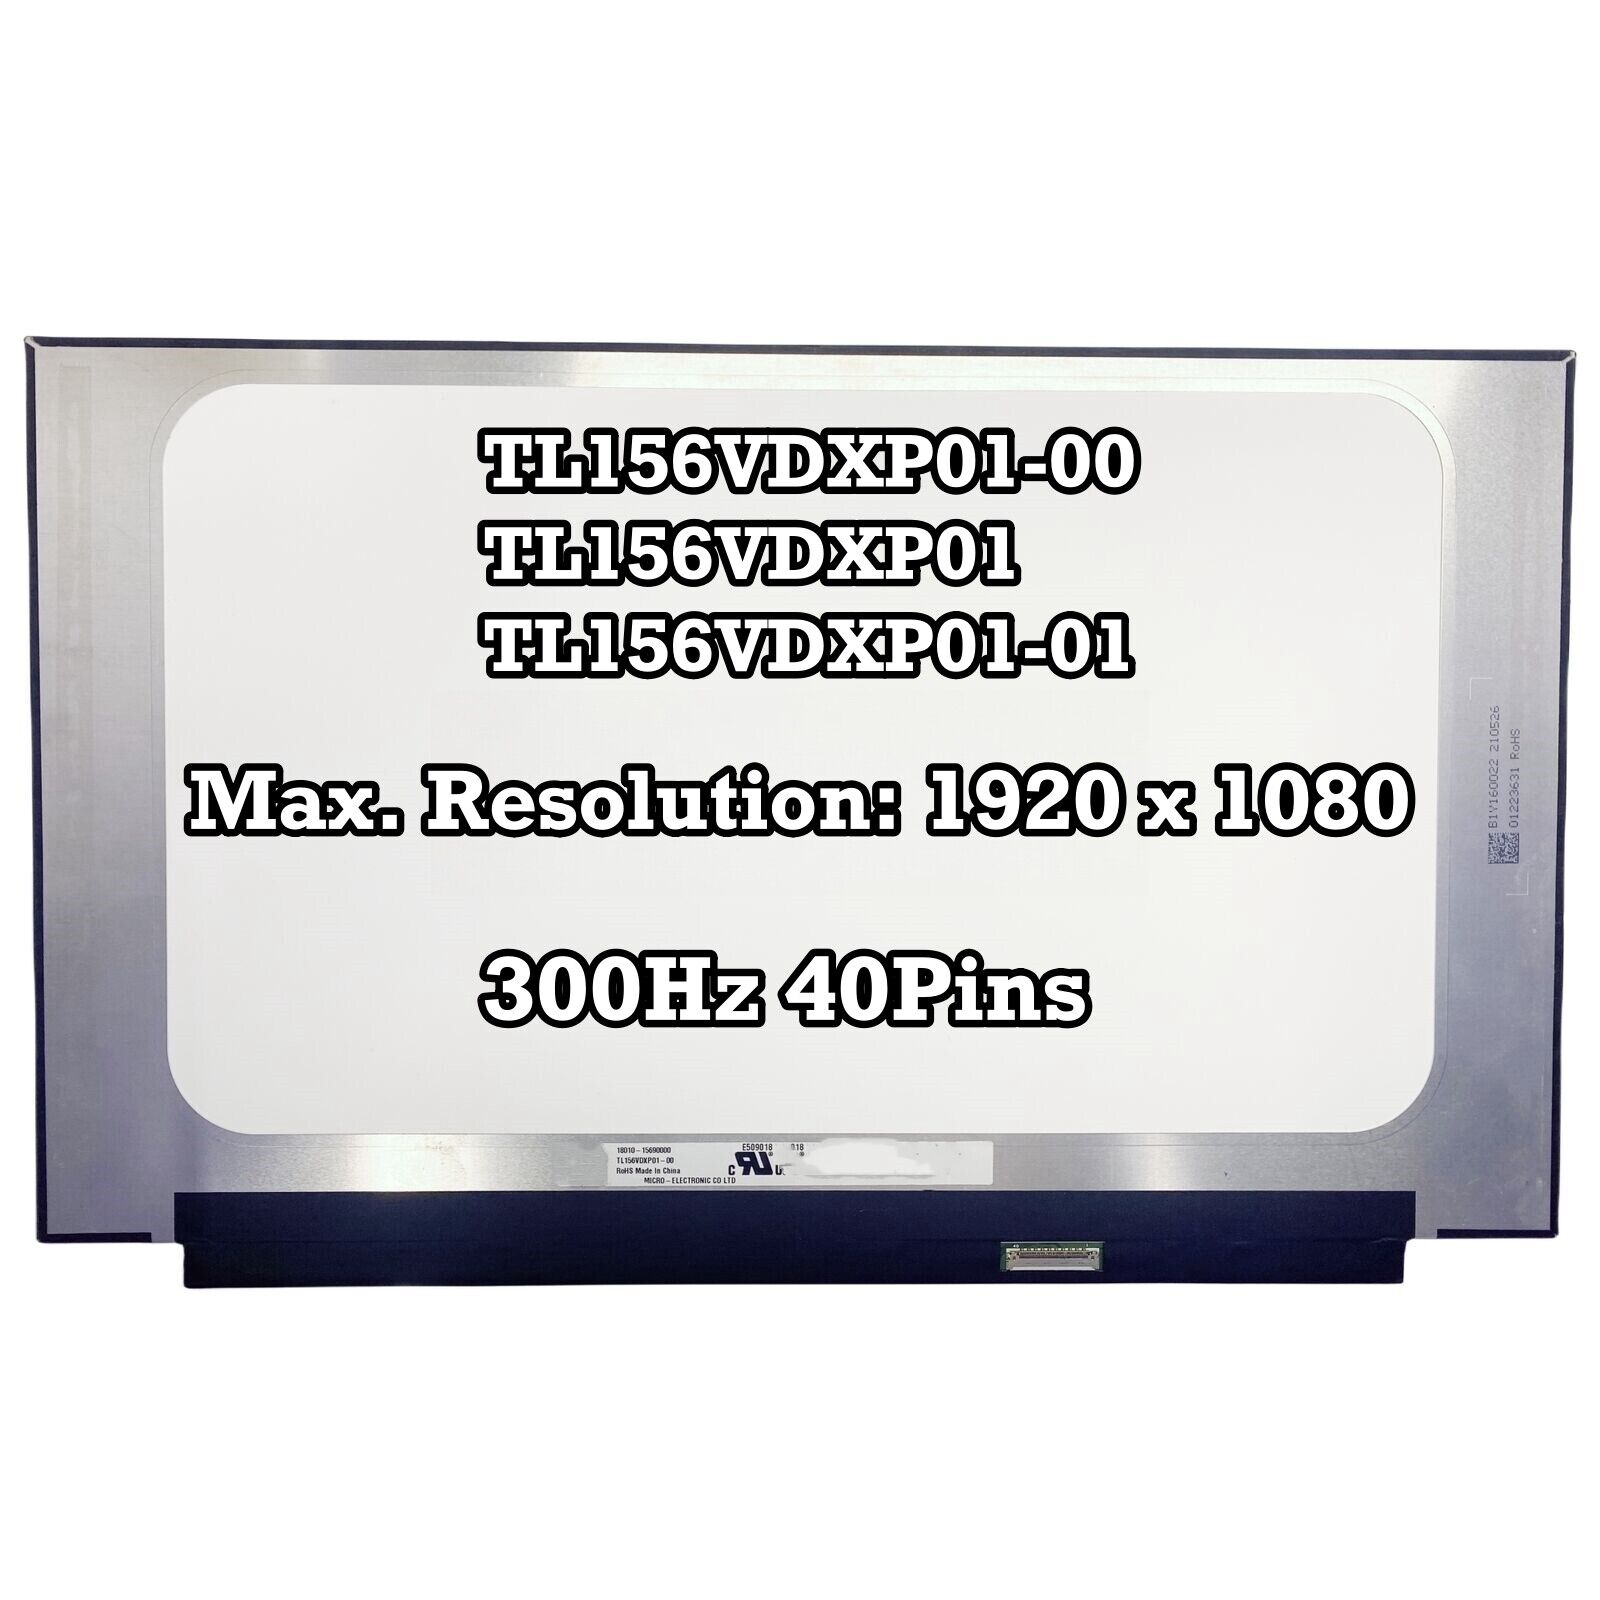 TL156VDXP01-00 TL156VDXP01 TL156VDXP01-01 IPS 300Hz 40Pins FHD LED LCD Screen